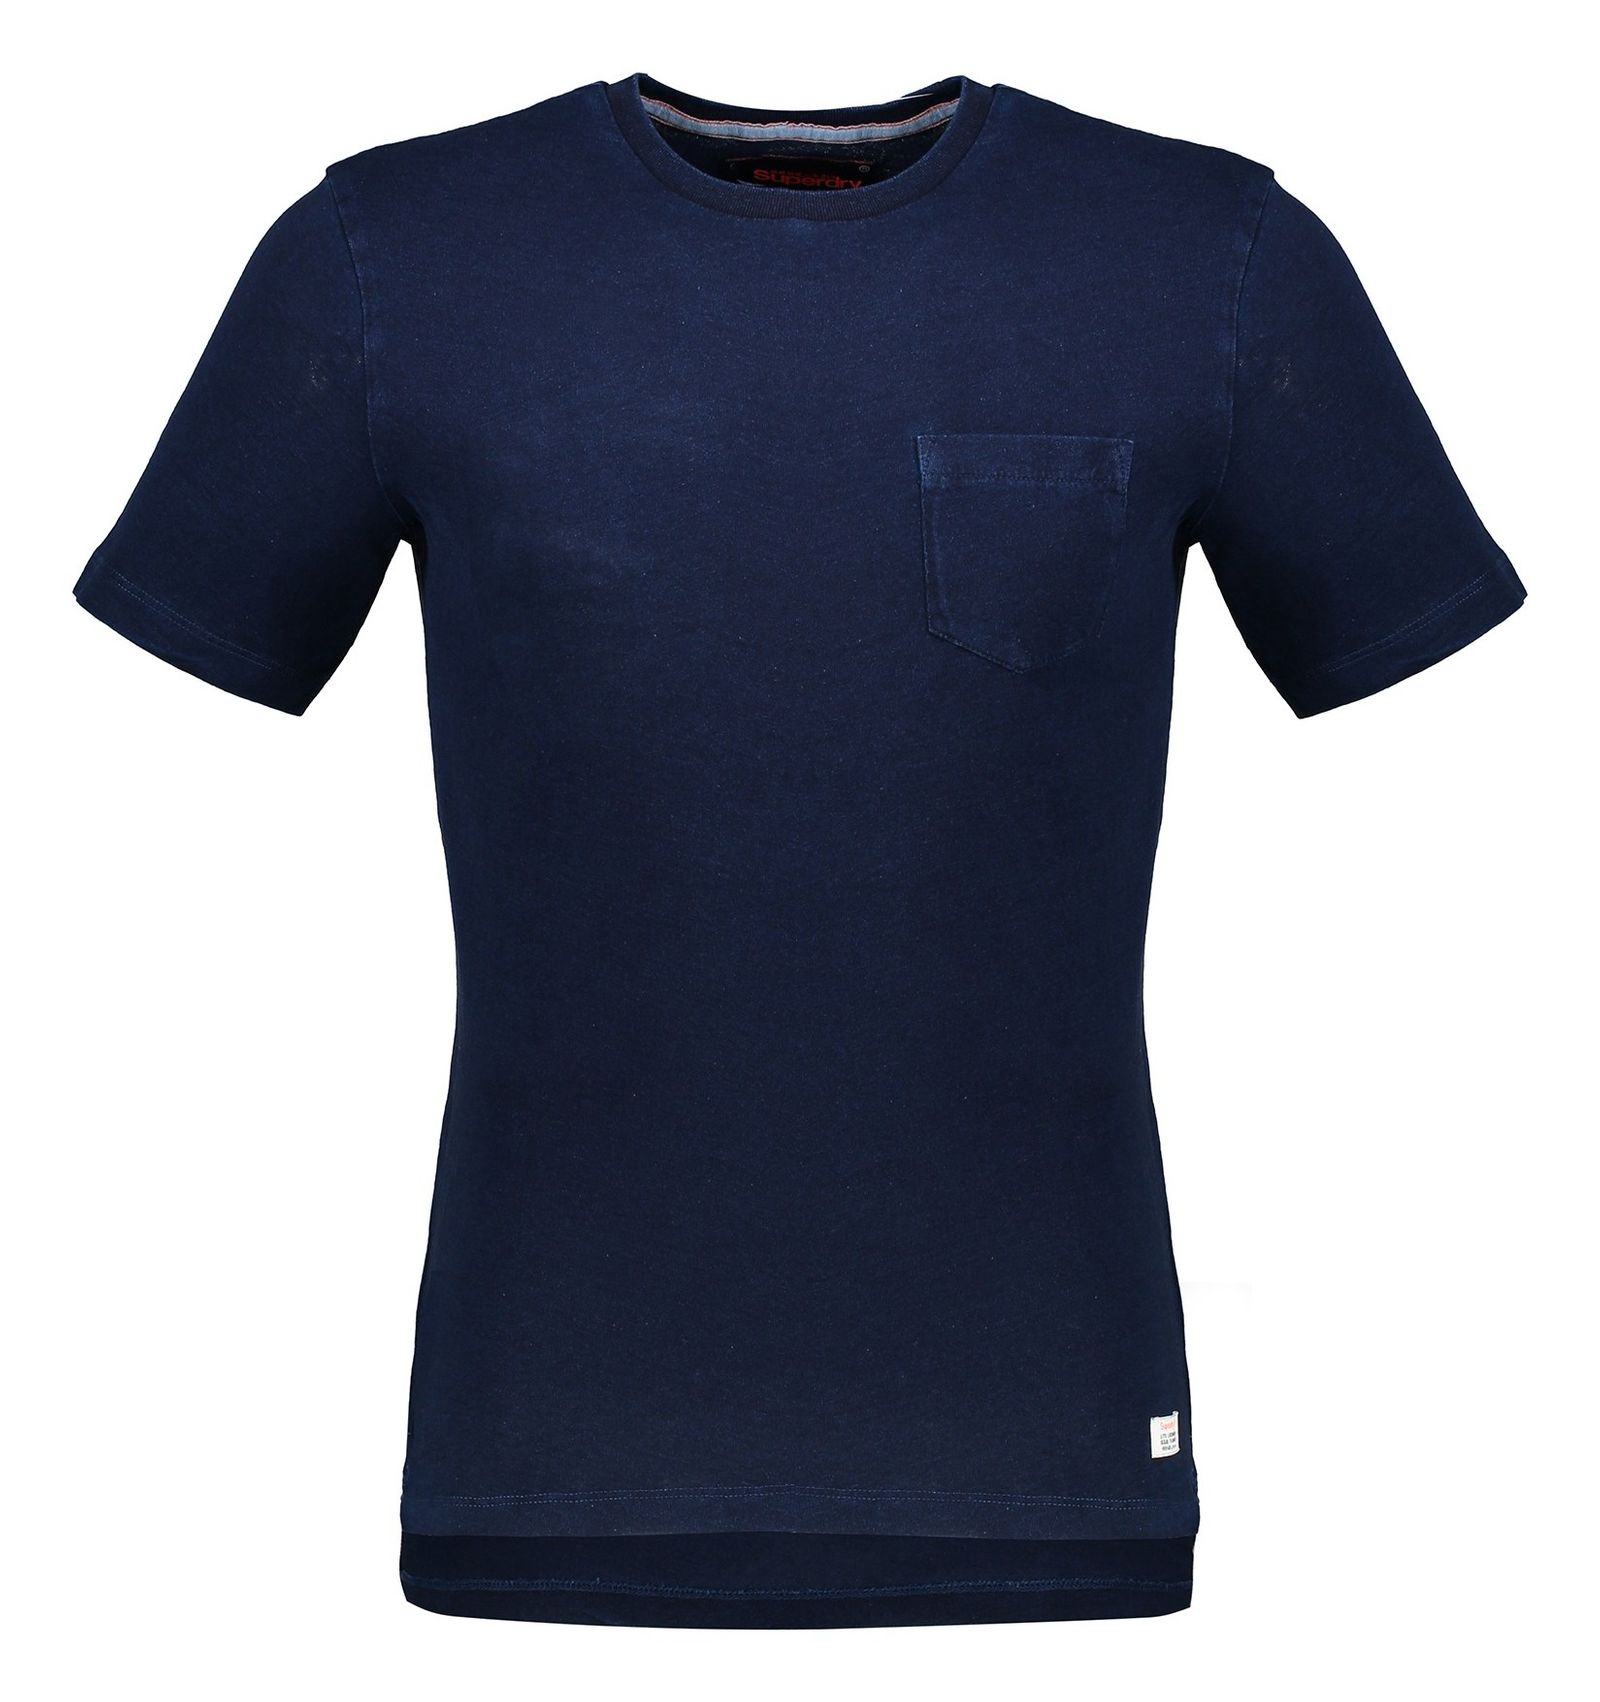 تی شرت نخی یقه گرد مردانه - سوپردرای - سرمه اي   - 2